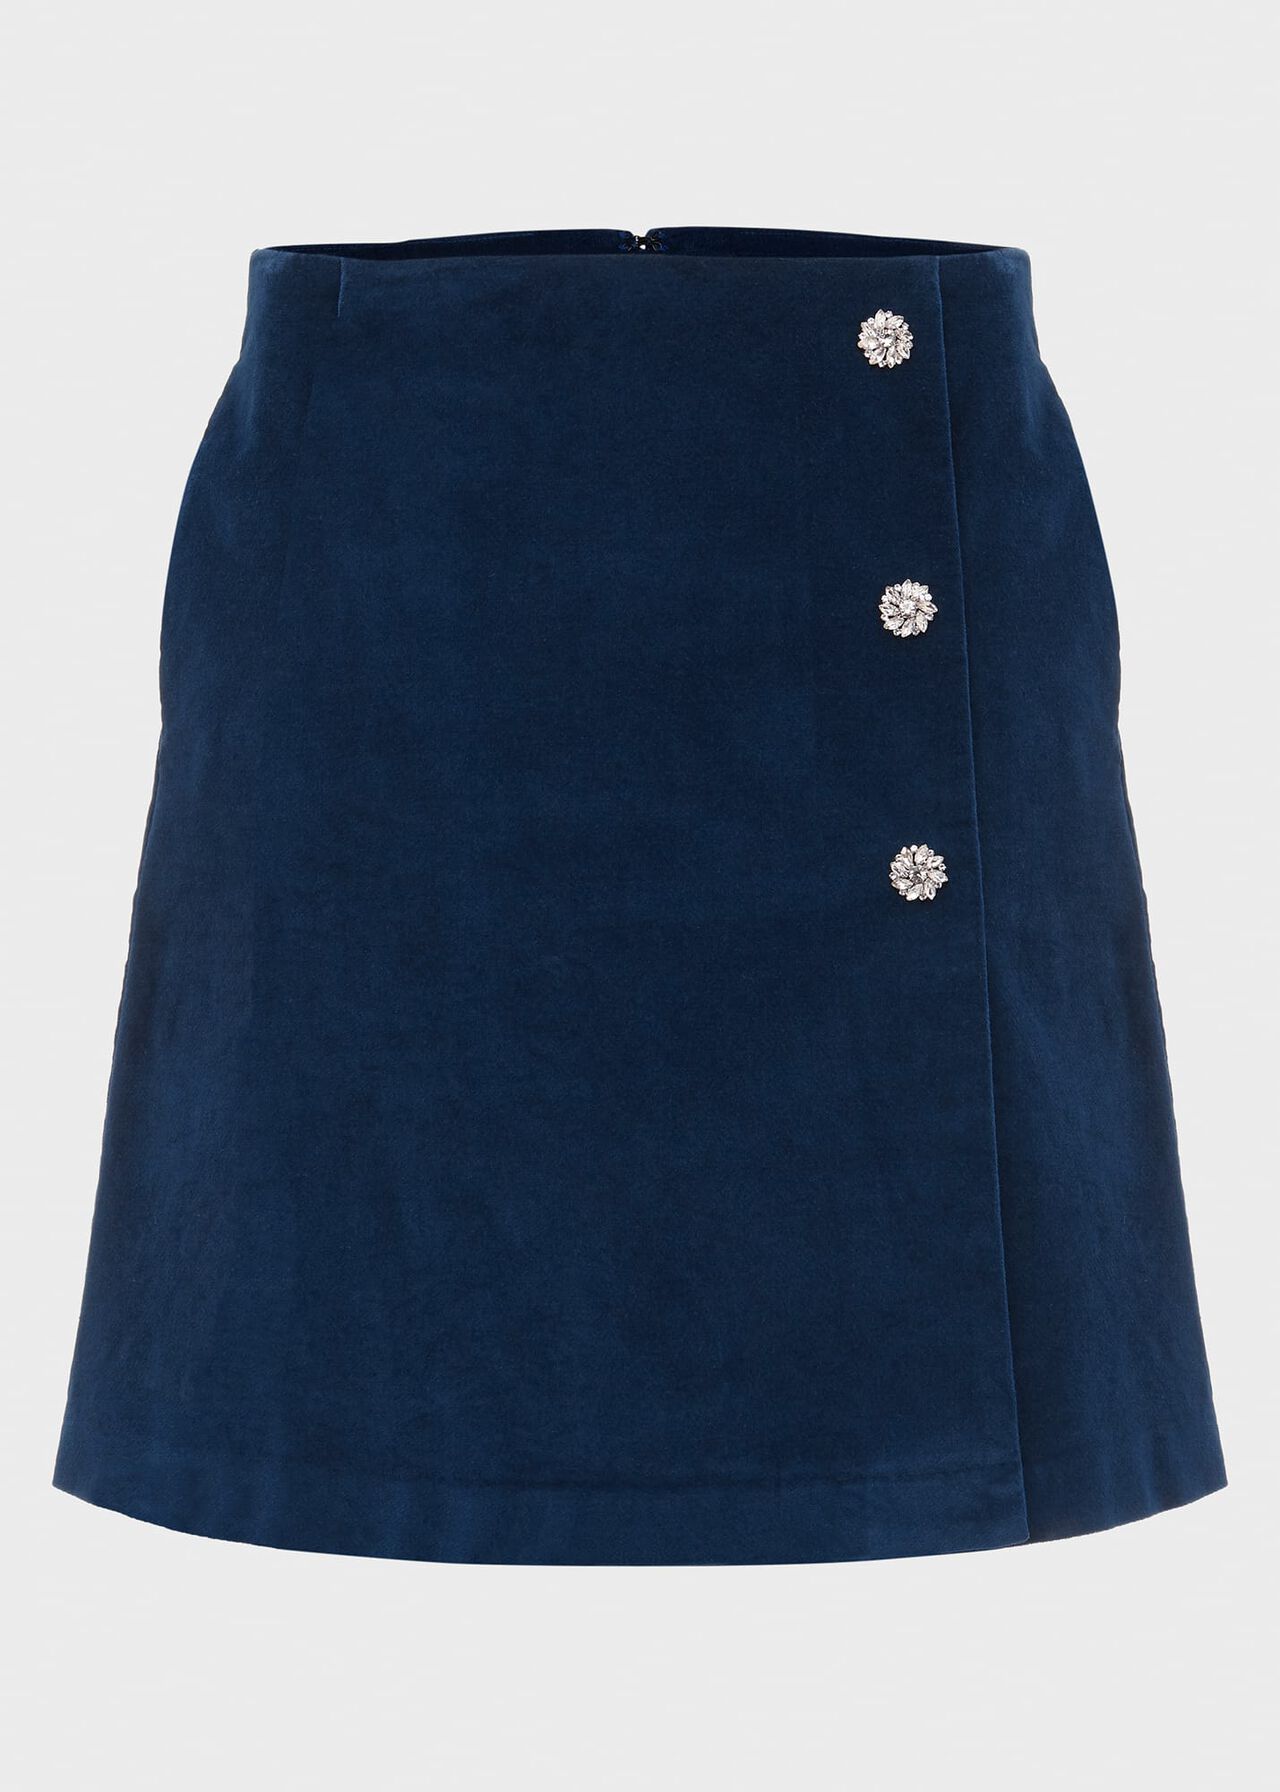 Lennox Velvet Skirt, Dark Blue, hi-res